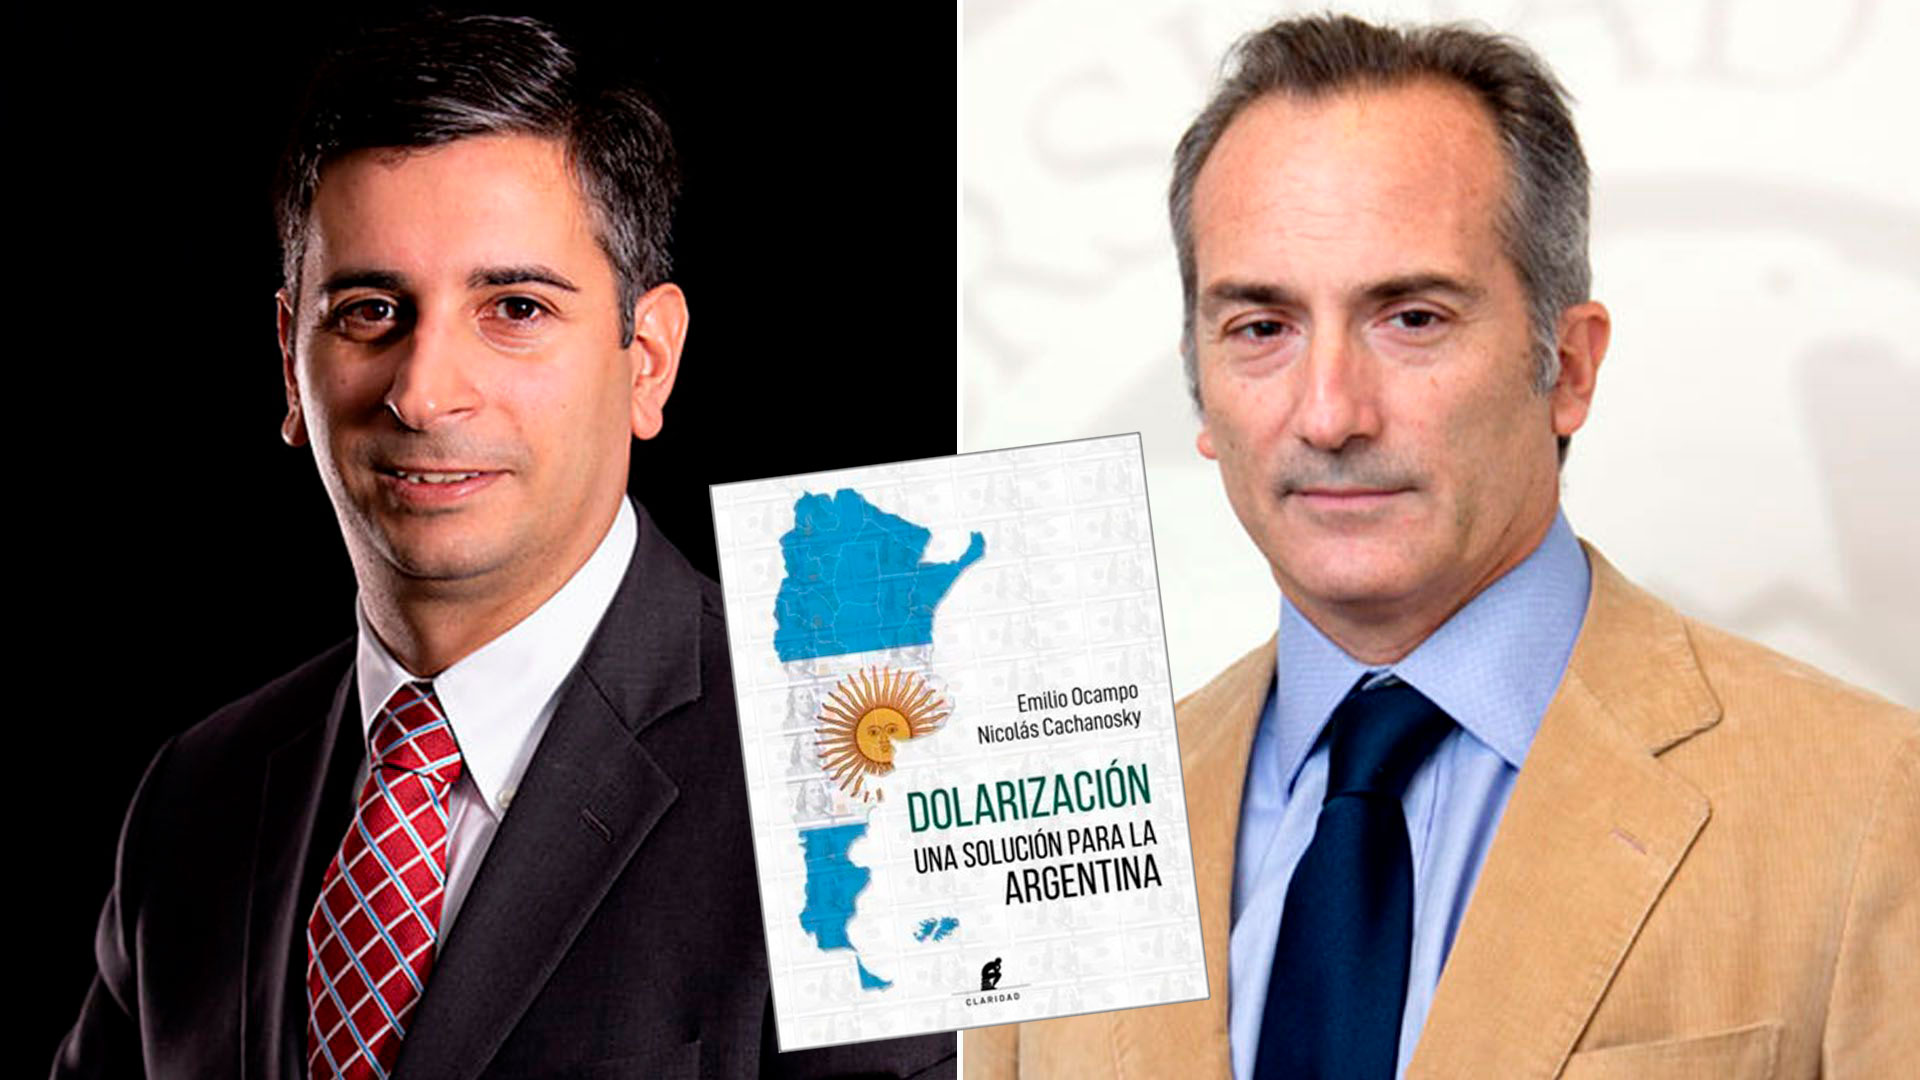 El libro "Dolarización, una solución para Argentina". de Emilio Ocampo y Nicolás Cachanosky